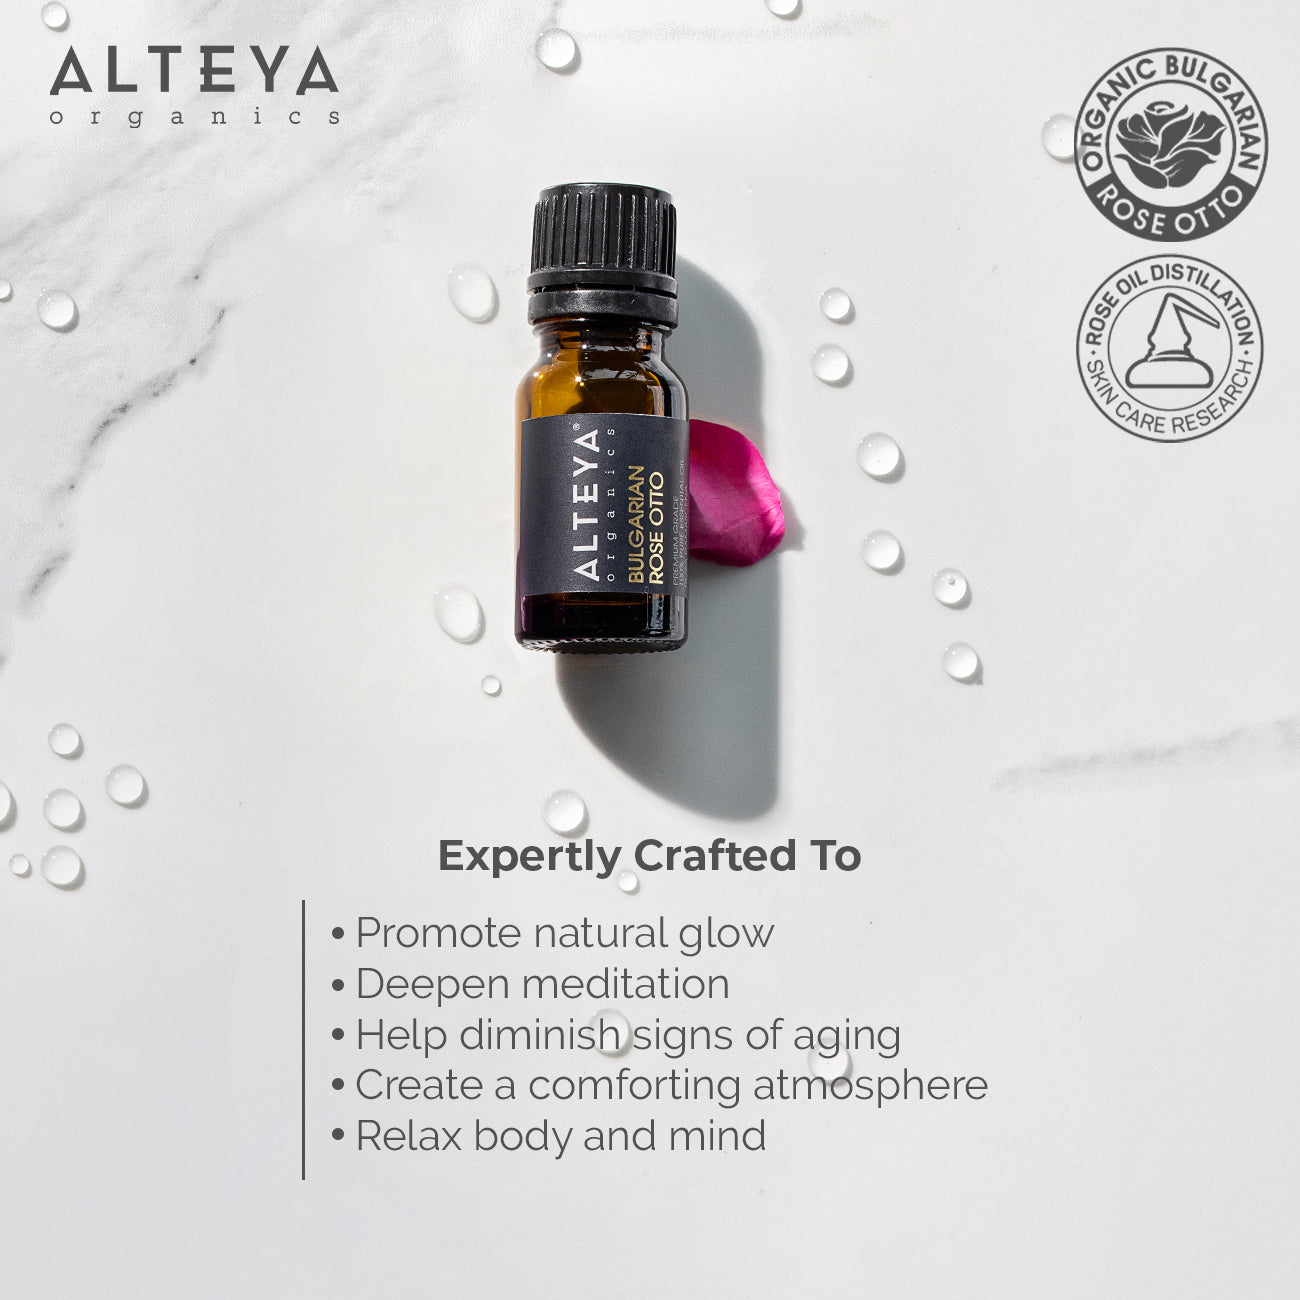 Alteya-organics-rose-oil-expertly-crafed